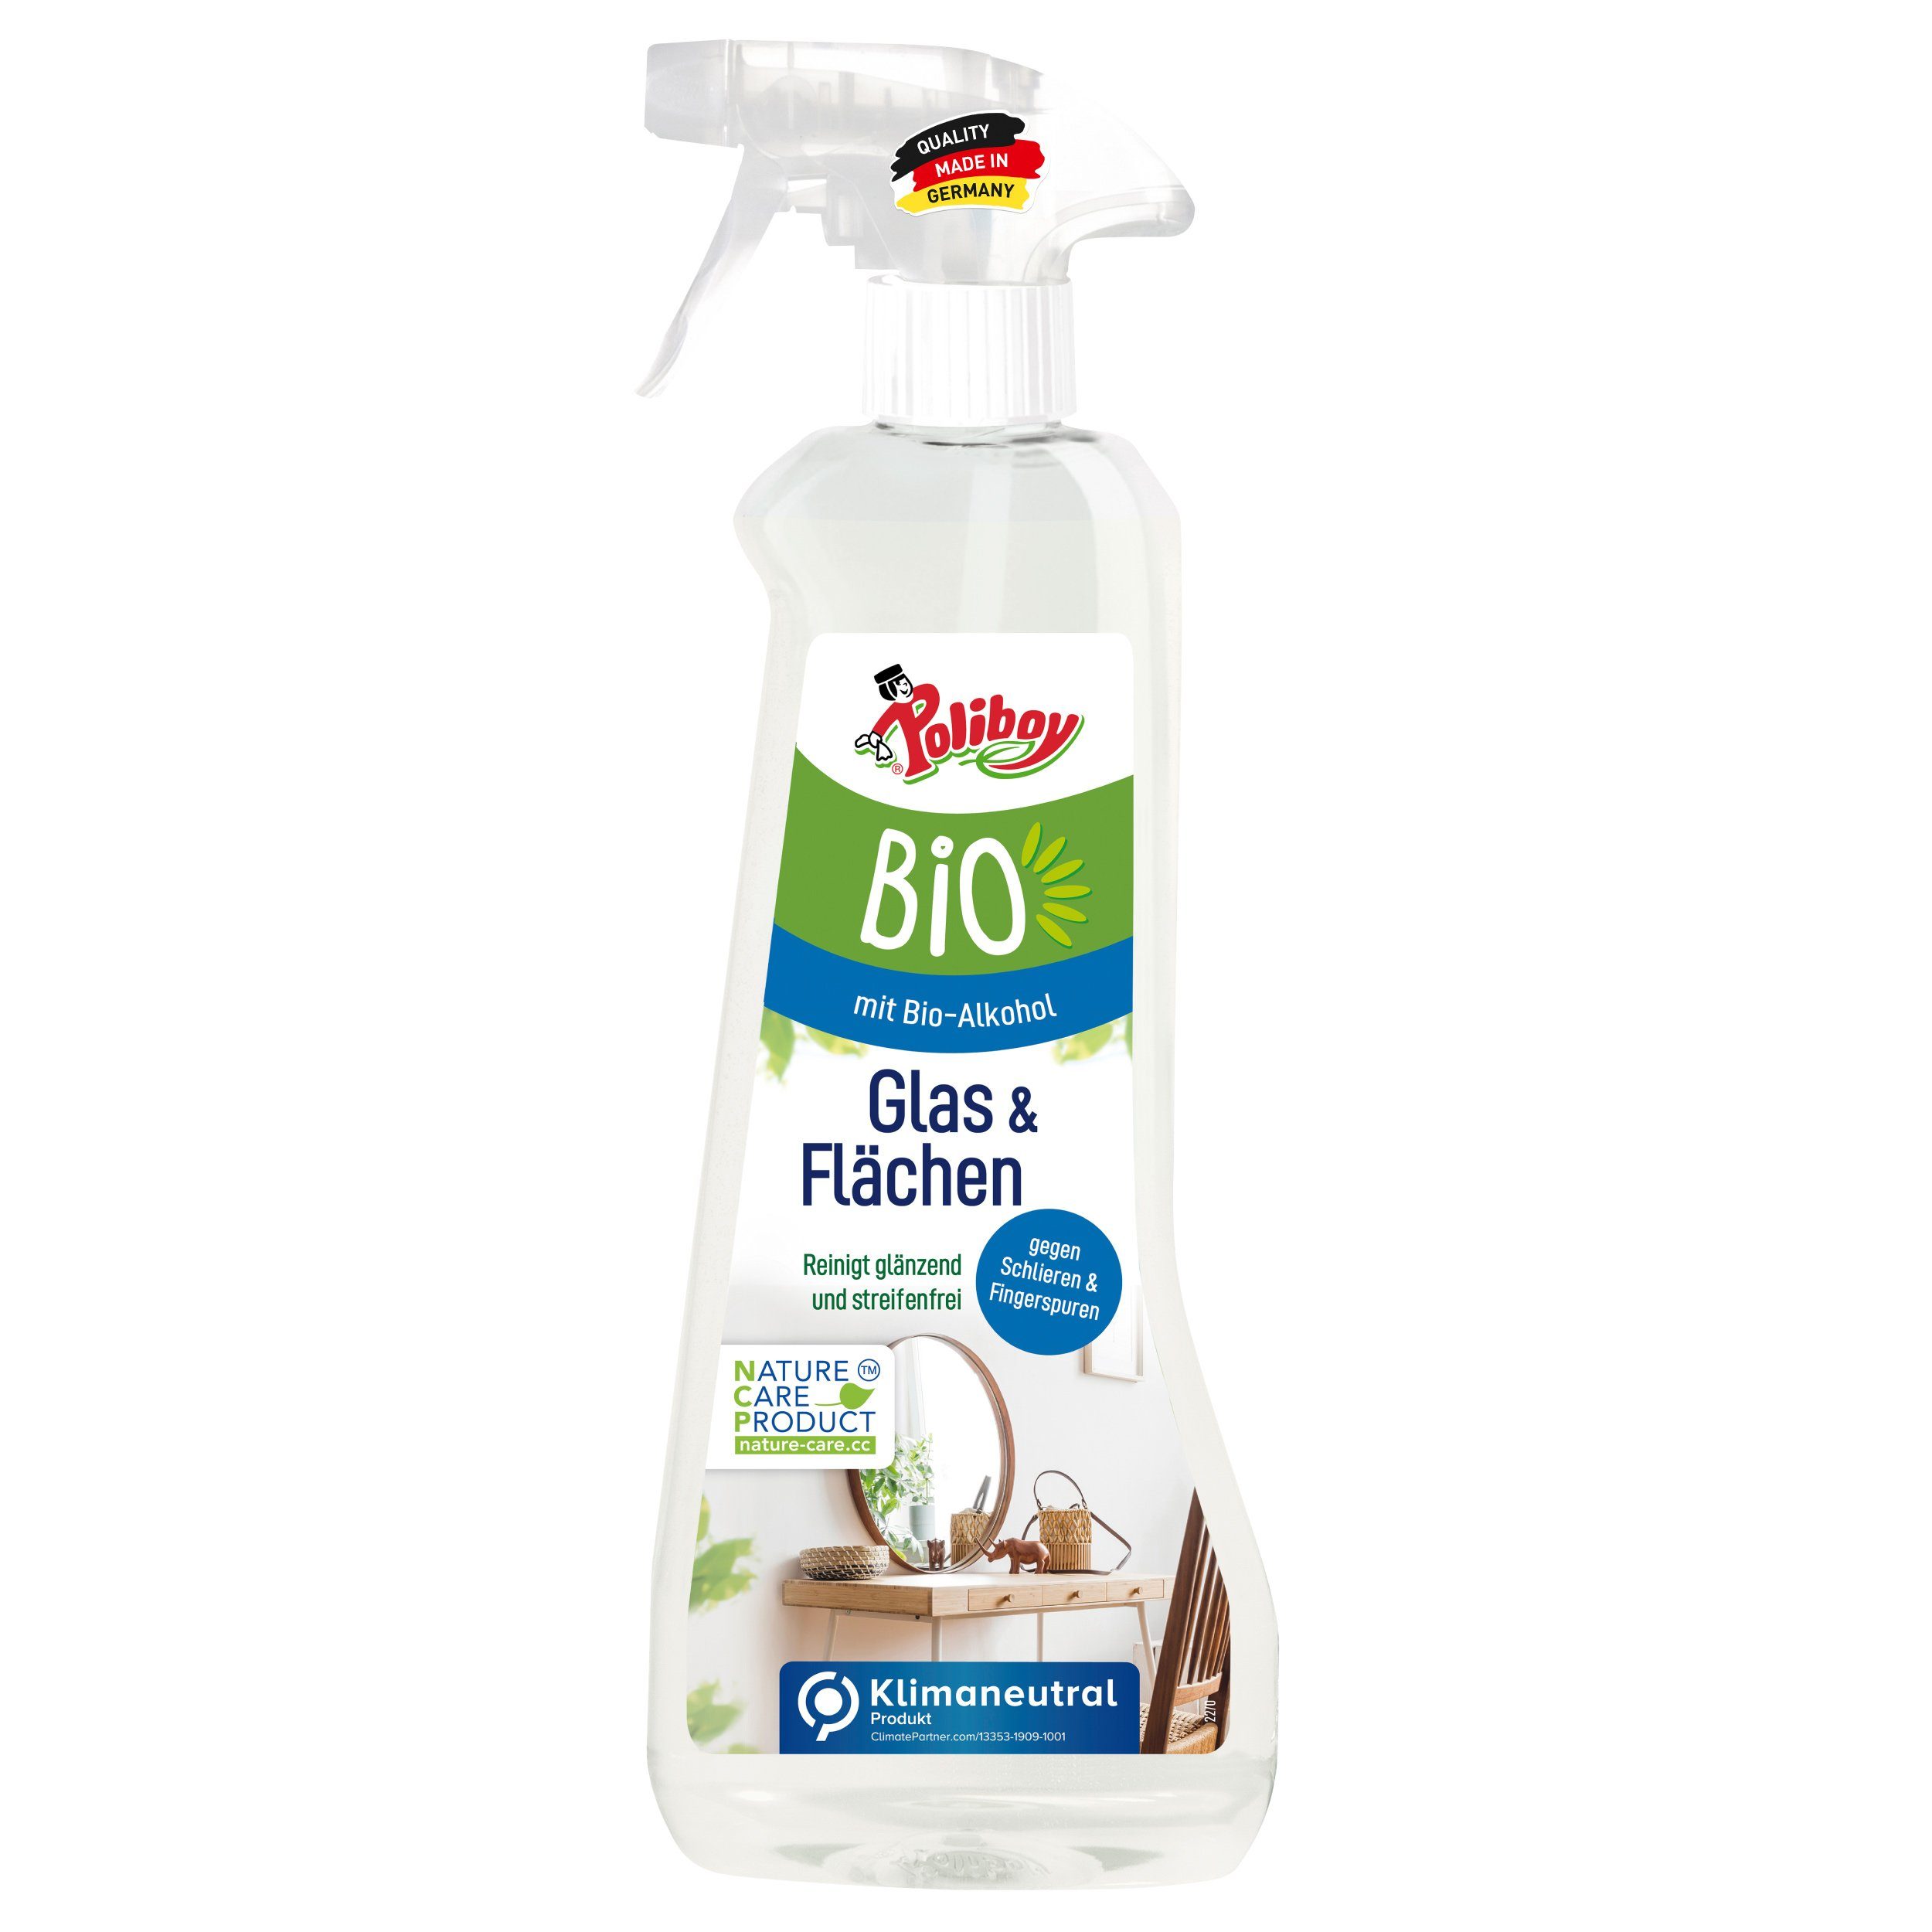 poliboy - 500 ml - Bio Flächen- & Glasreiniger (zur einfachen Reinigung von spiegelnden Oberflächen - Made in Germany)